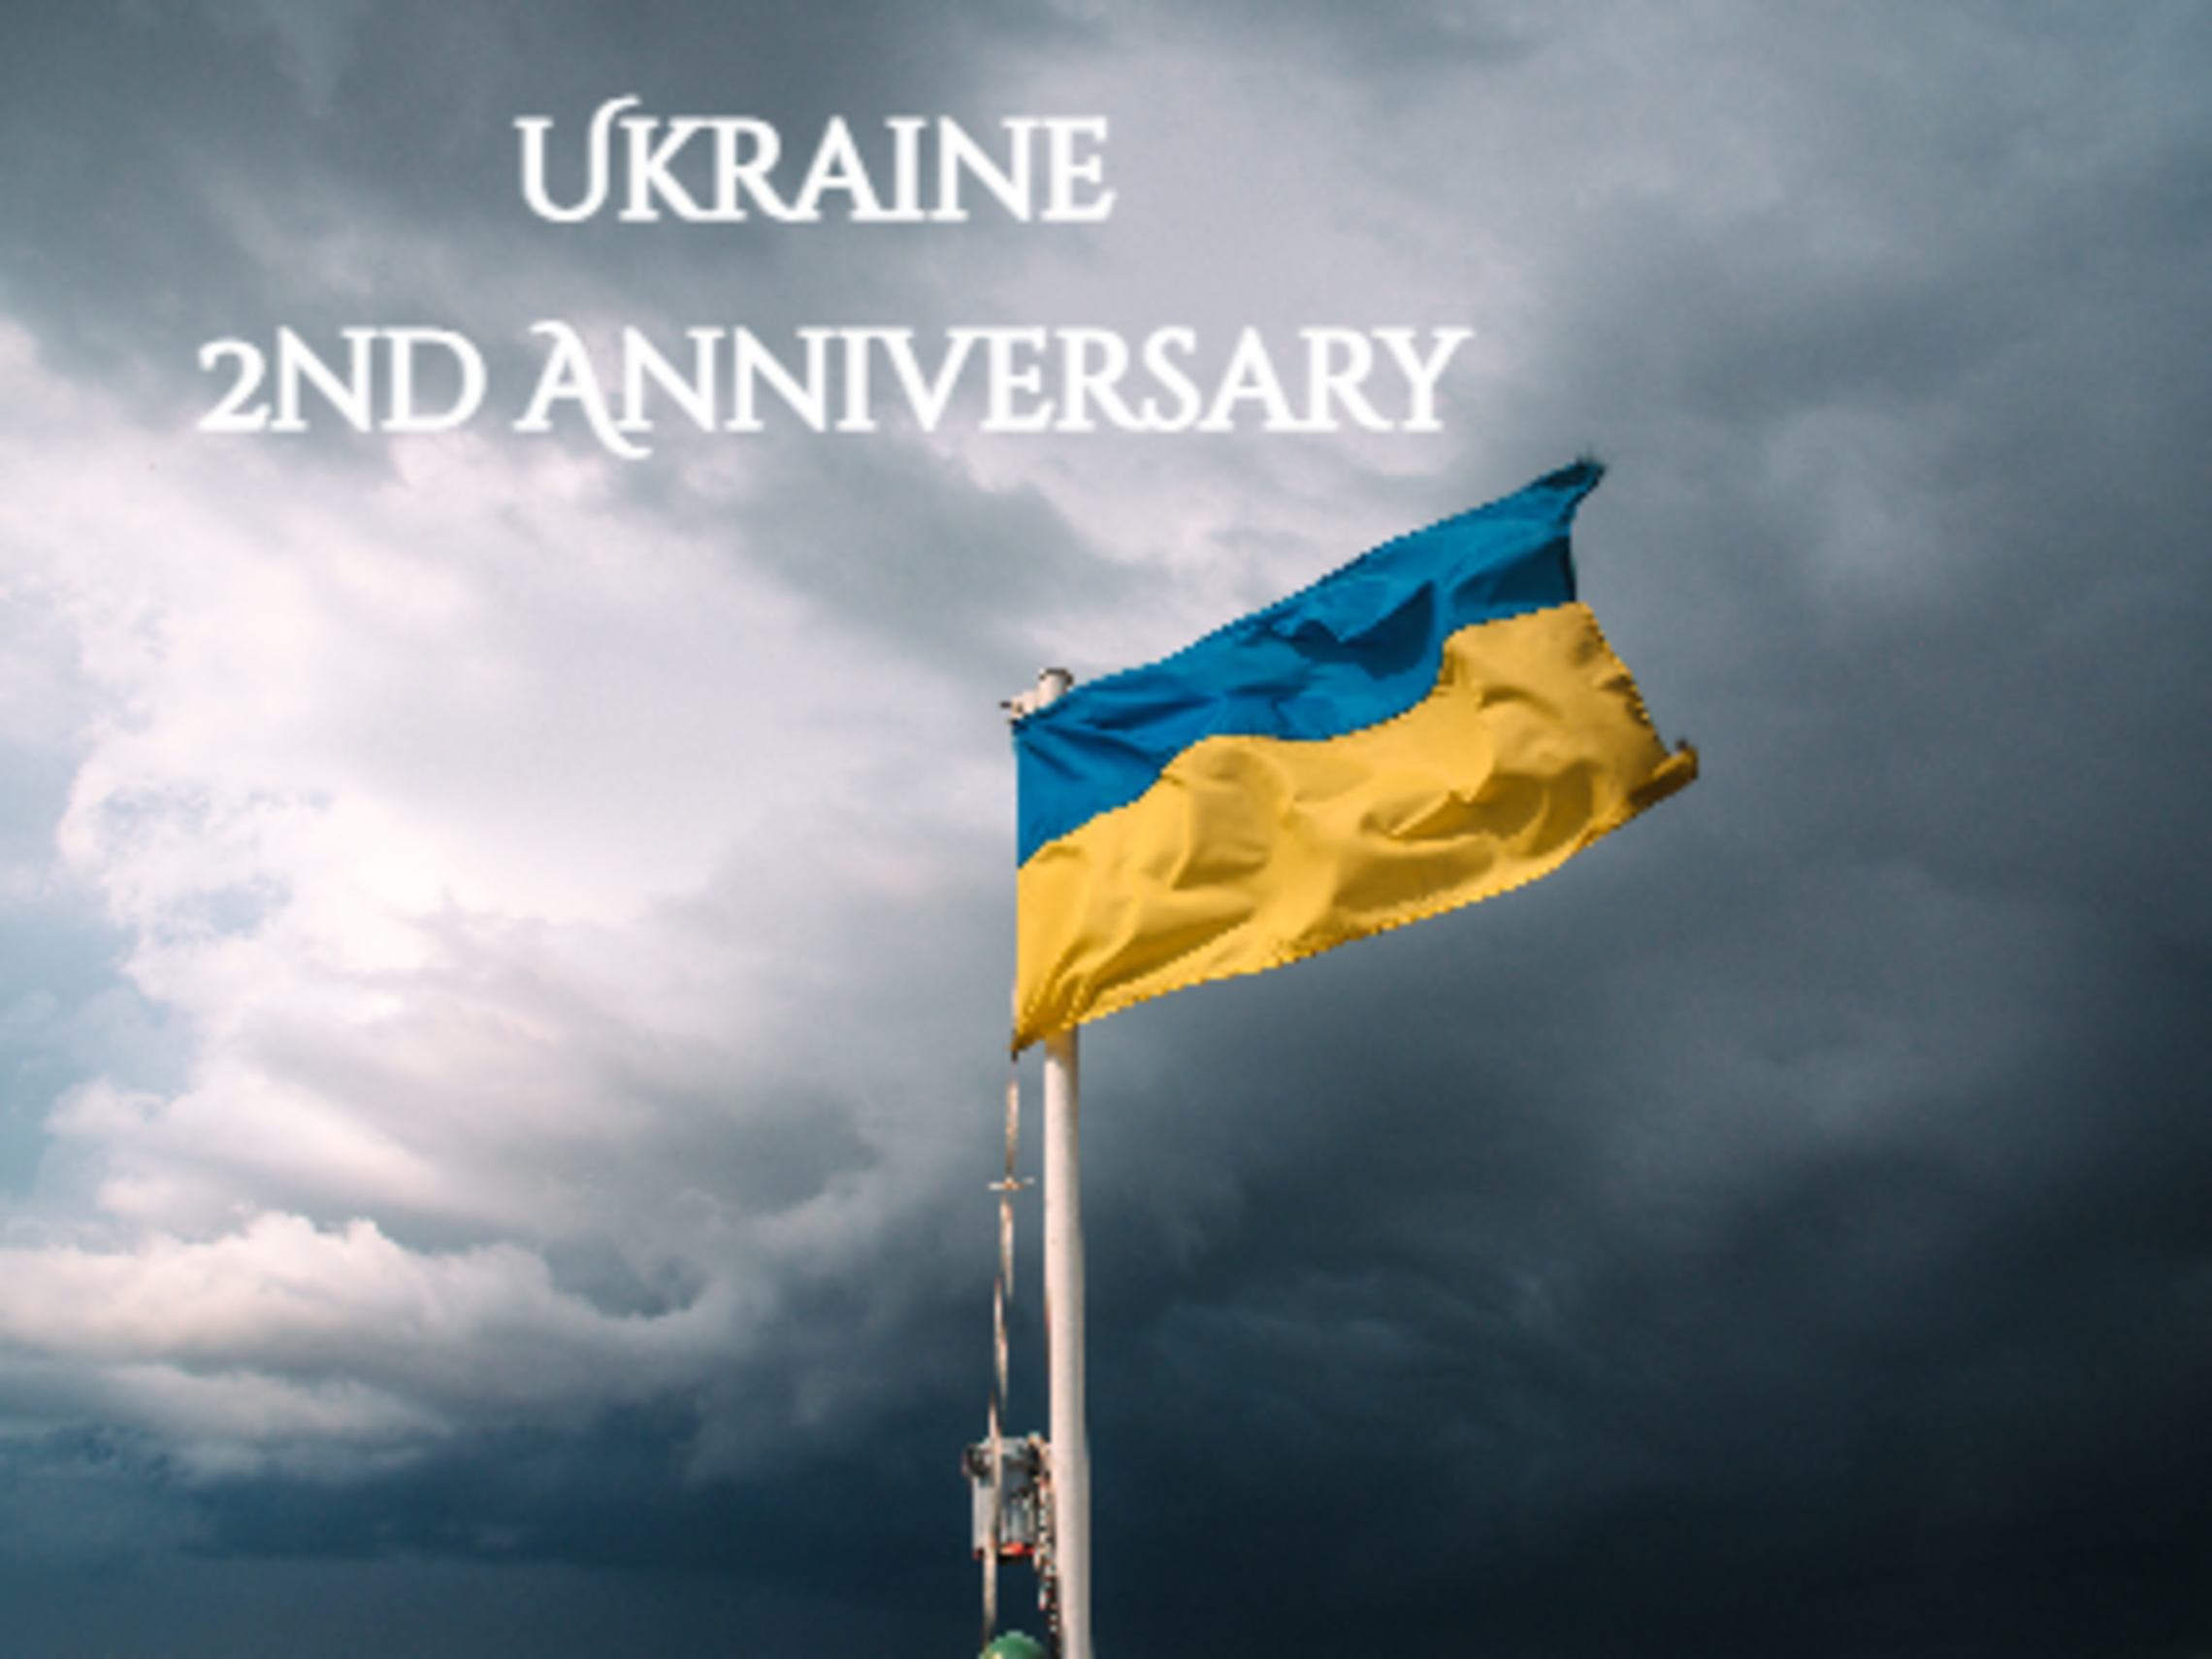 Ukraine 2nd Anniversary